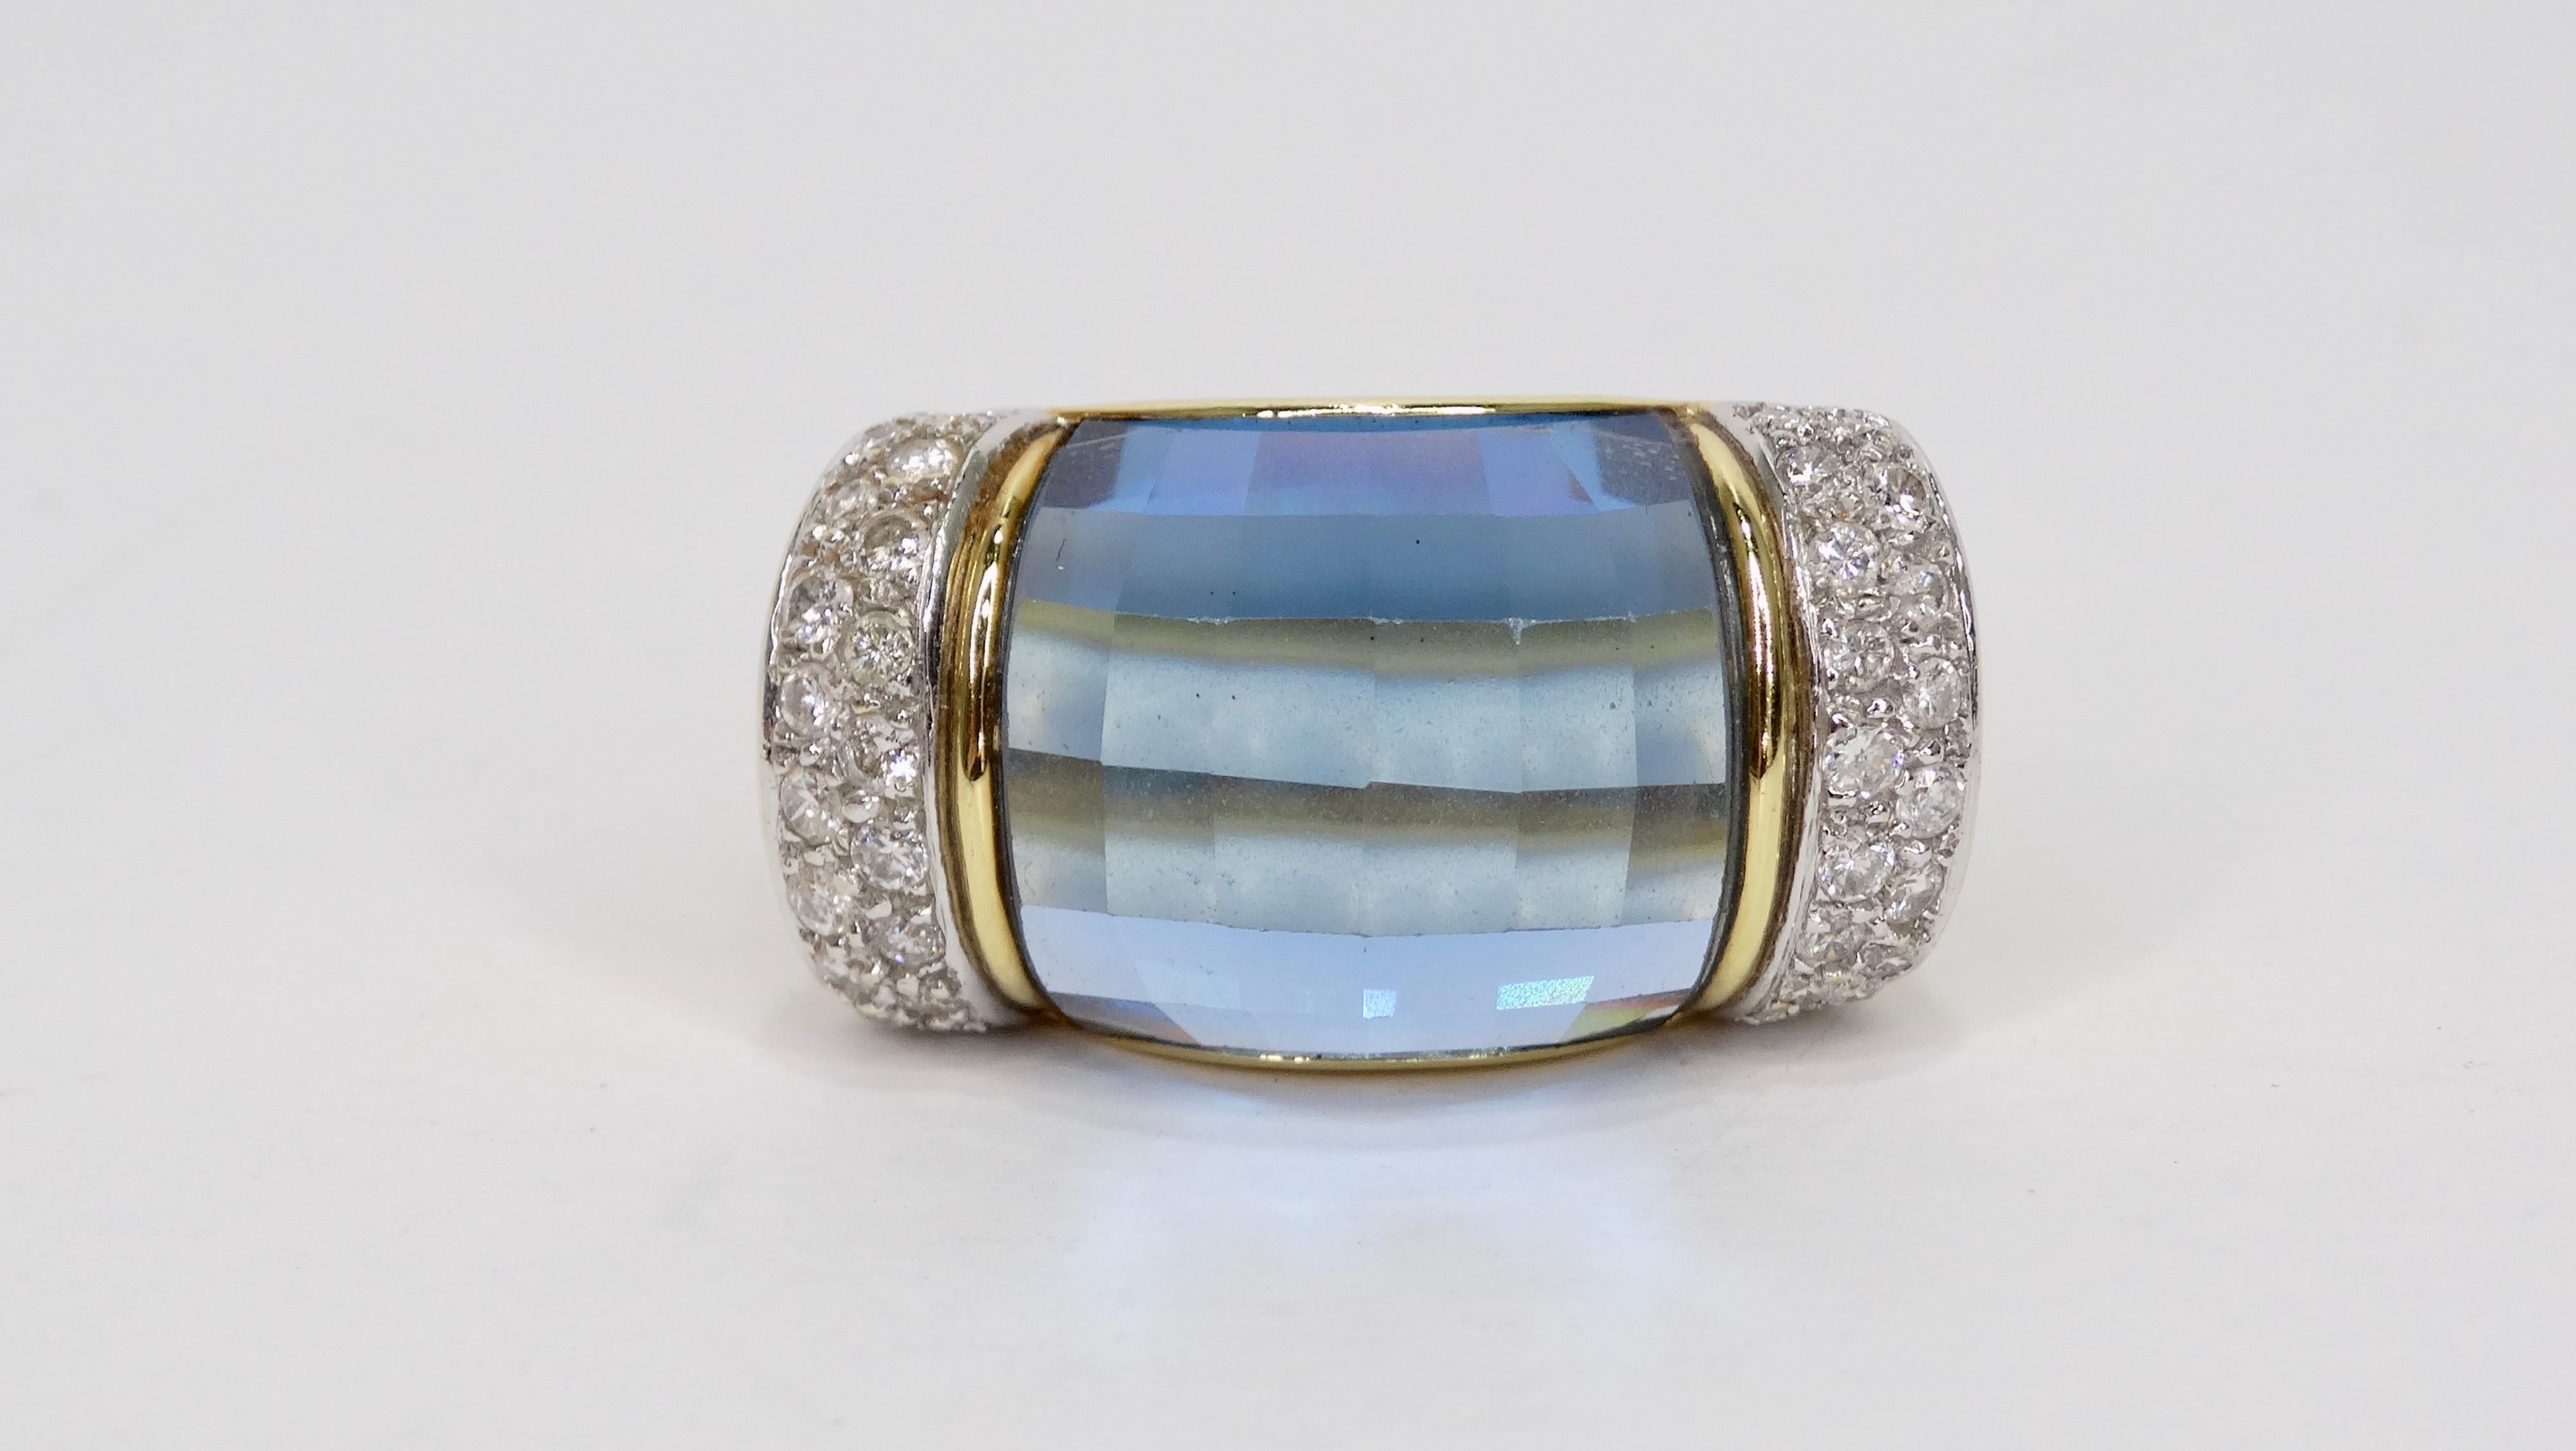 Complétez votre look de soirée avec cette magnifique bague ! Datant du milieu du 20e siècle, cette bague en or 18 carats présente un anneau réfléchissant avec une belle topaze bleue au centre et quatre rangées de diamants taillés en brillant sur les